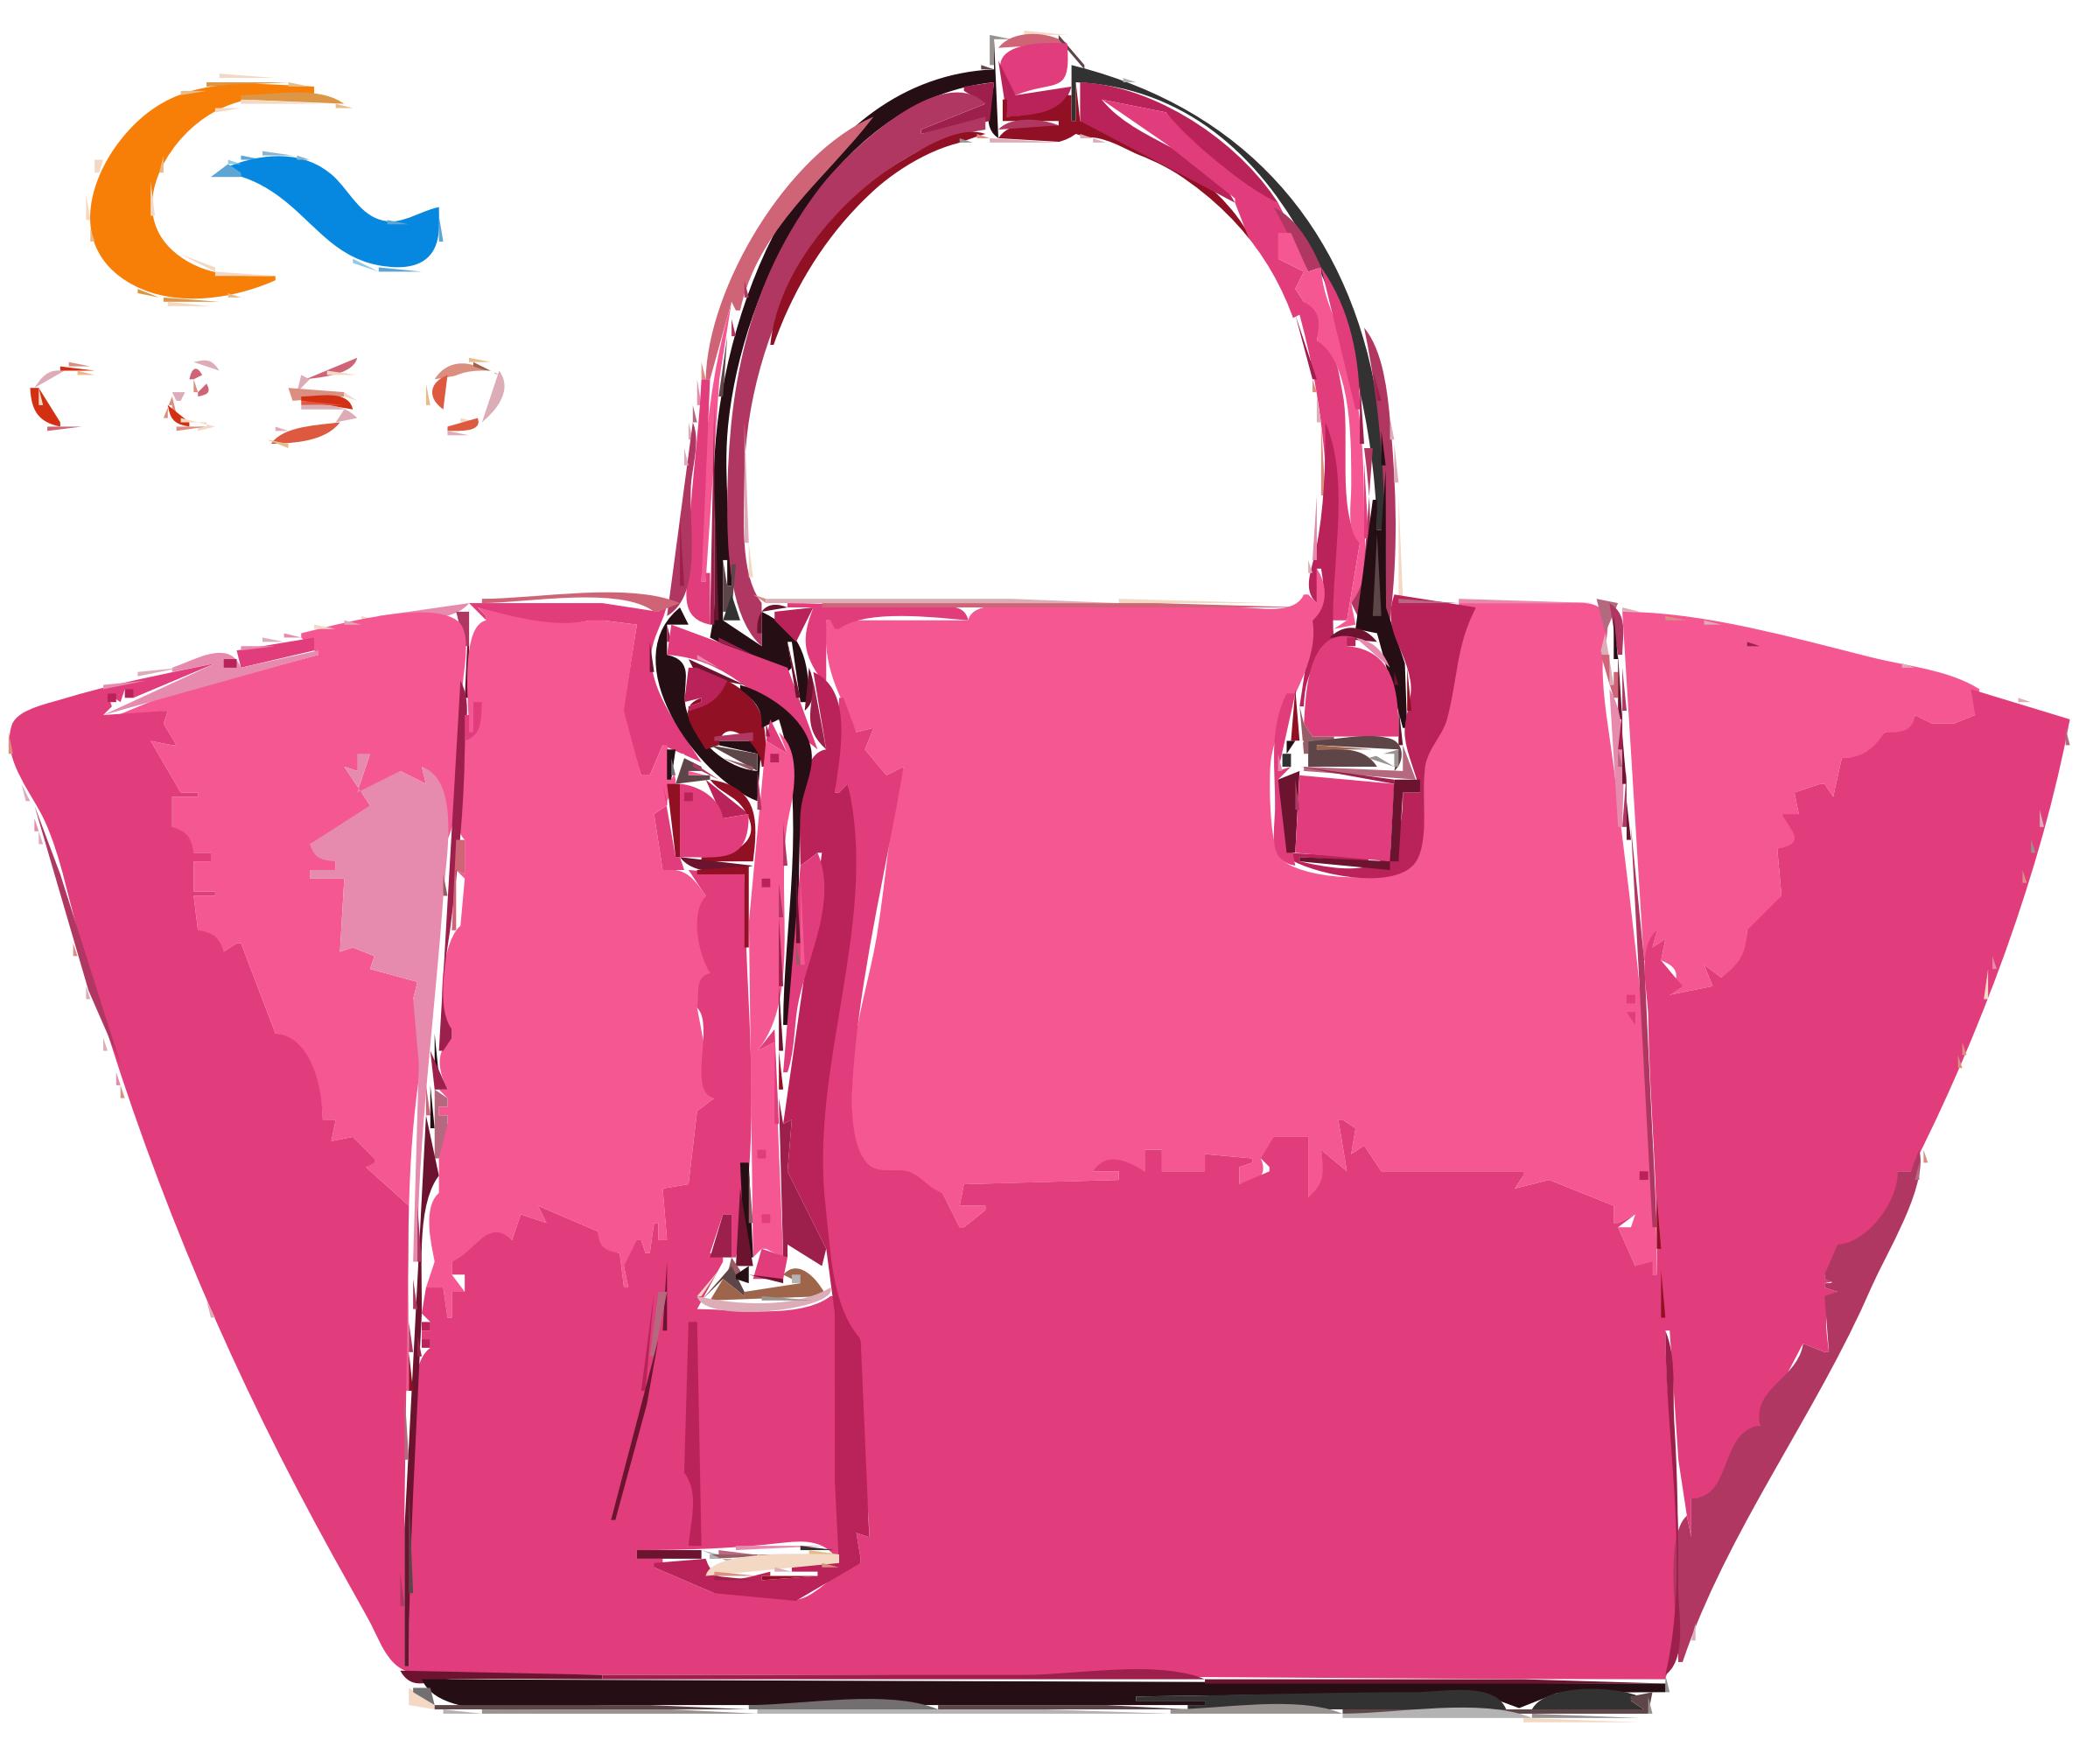 Big Pink Leather Handbag with Logo PNG icons